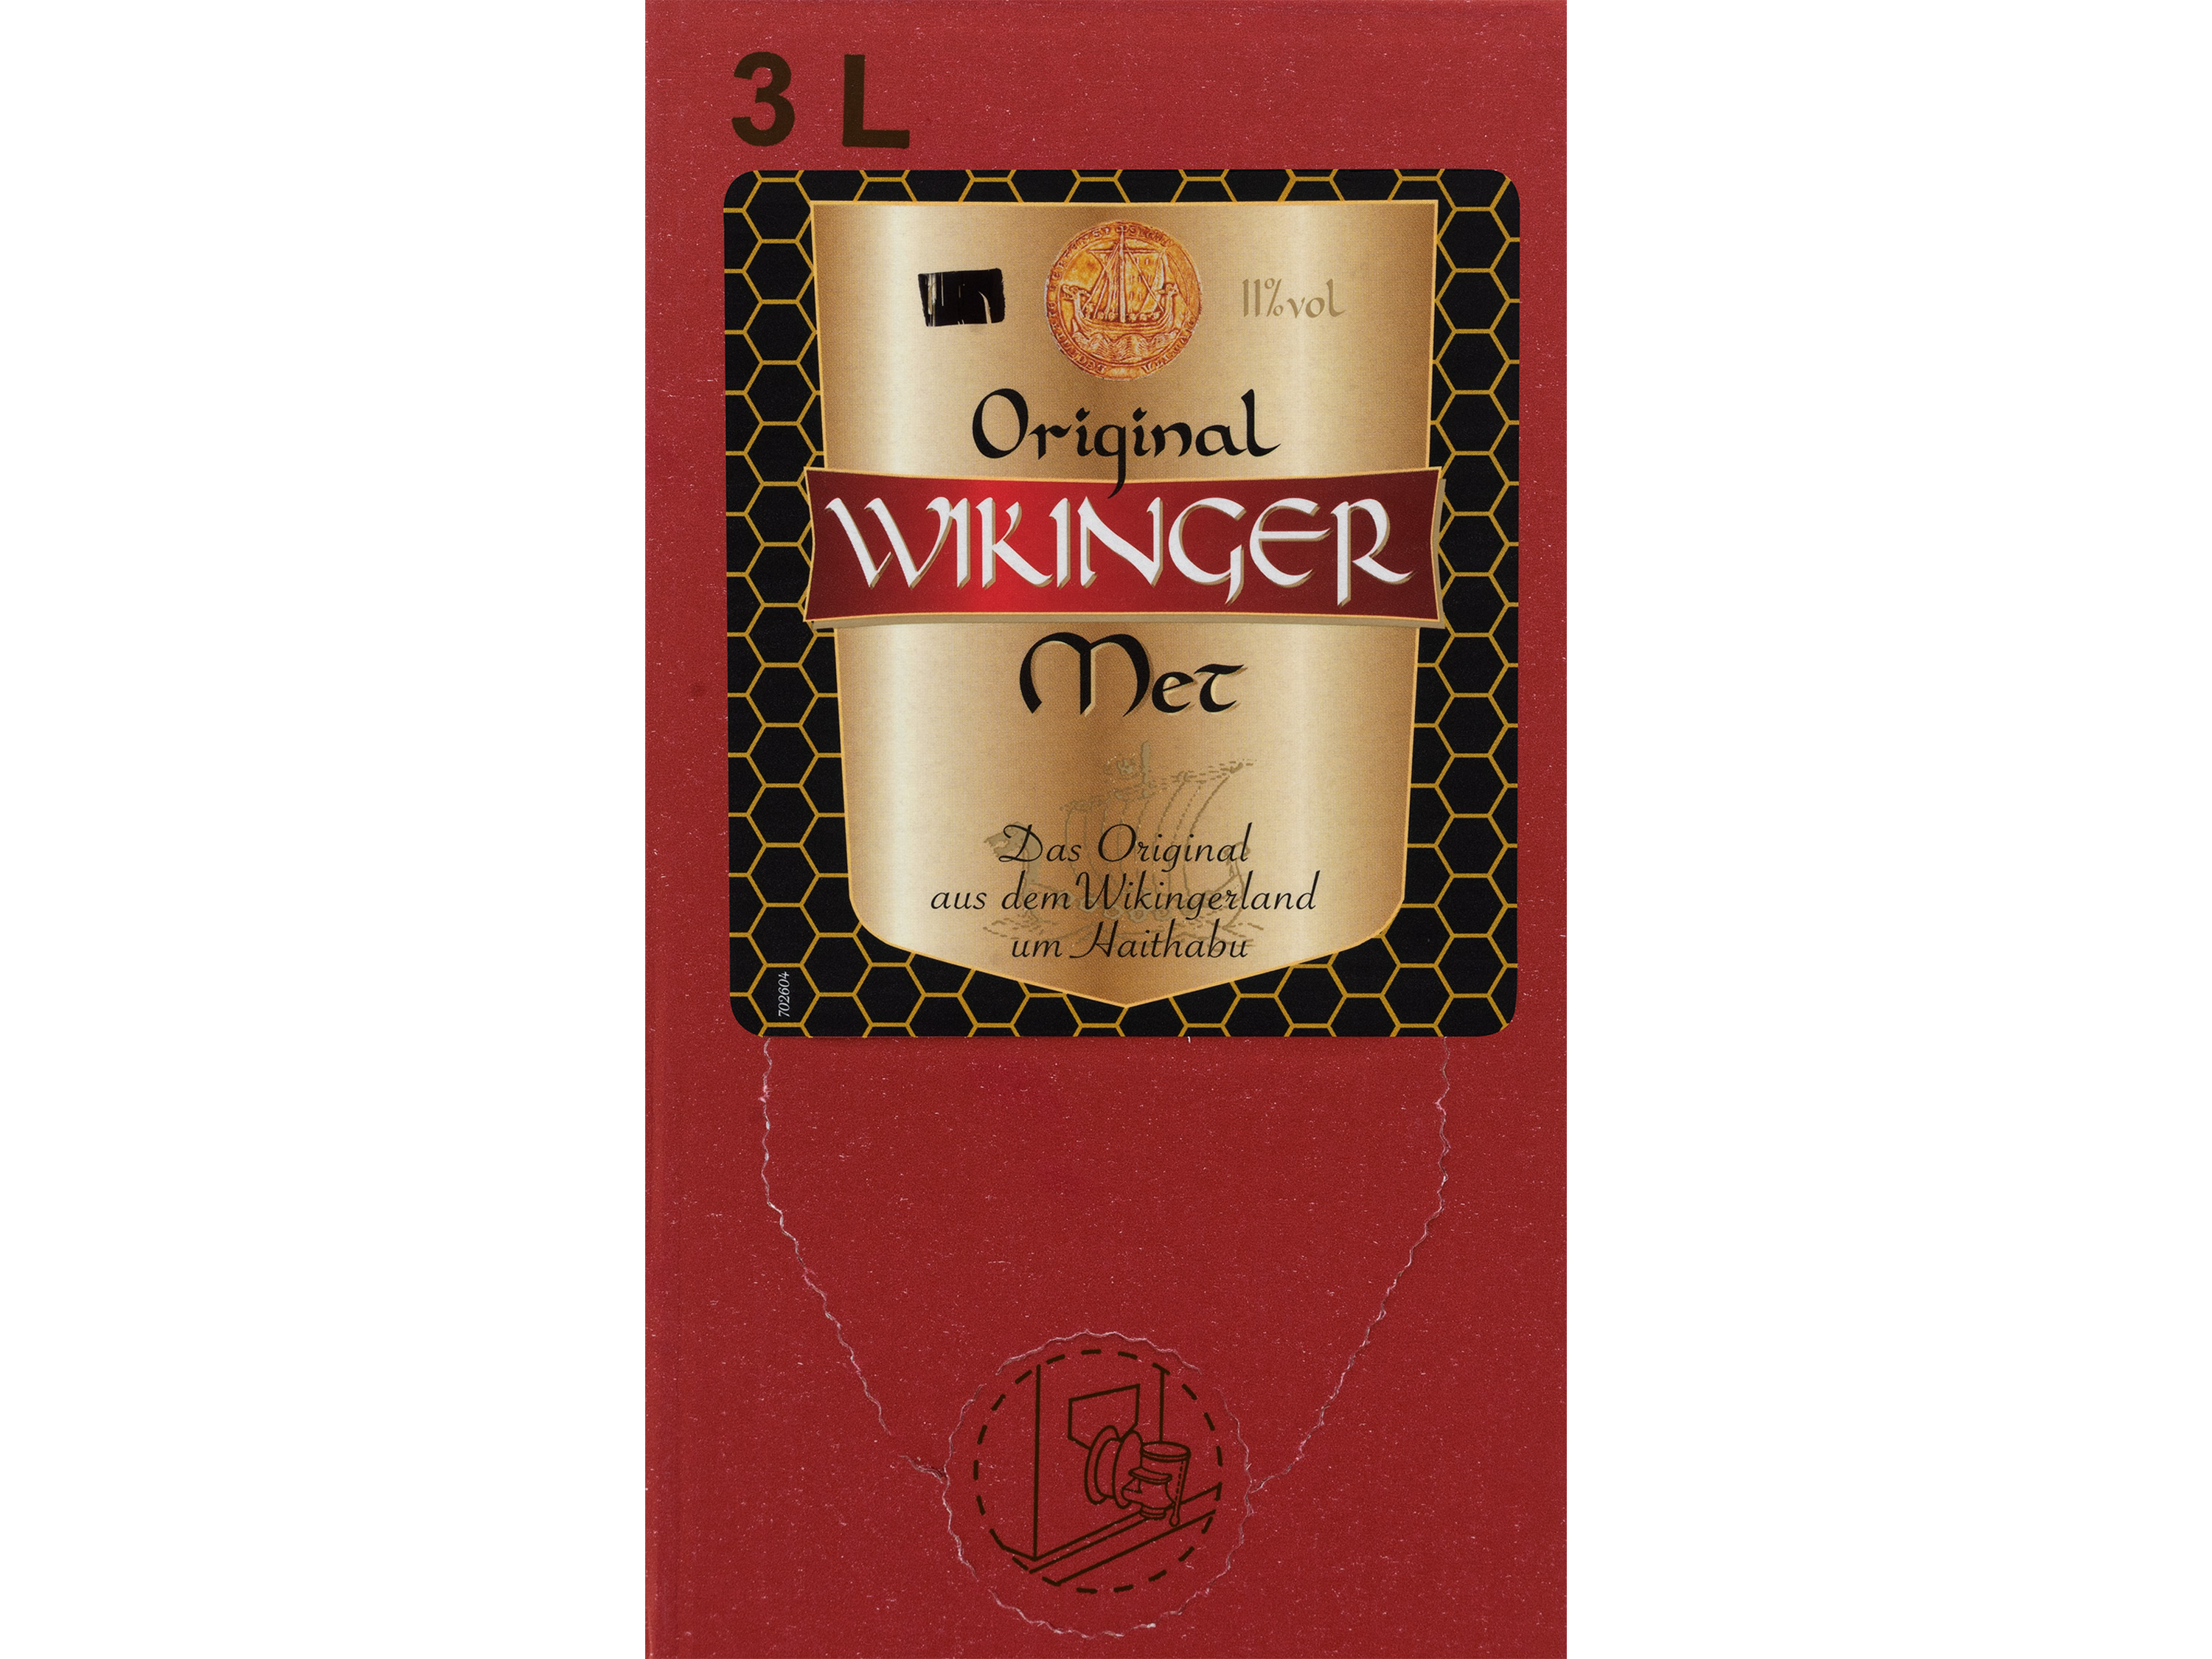 Wikinger Met Bag-in-Box, Honigwein 11% Vol Wein & Spirituosen Lidl DE